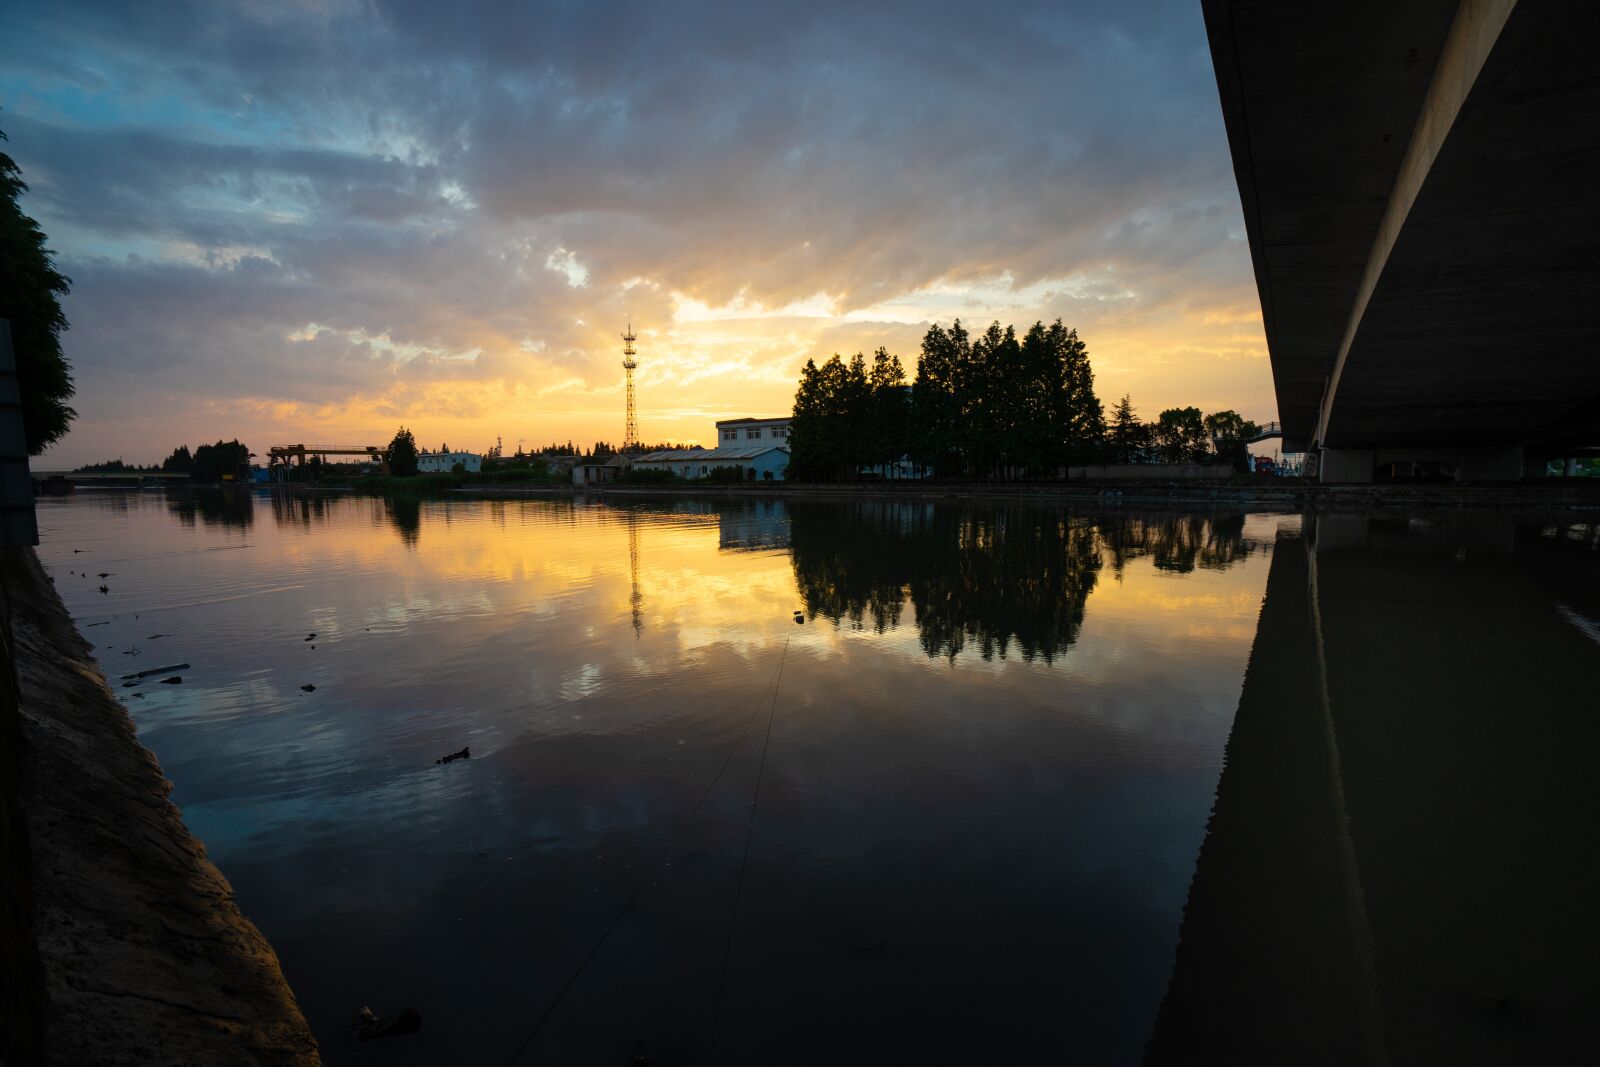 Sony a7 + Sony Vario-Tessar T* FE 16-35mm F4 ZA OSS sample photo. Sunset, reflection, water photography